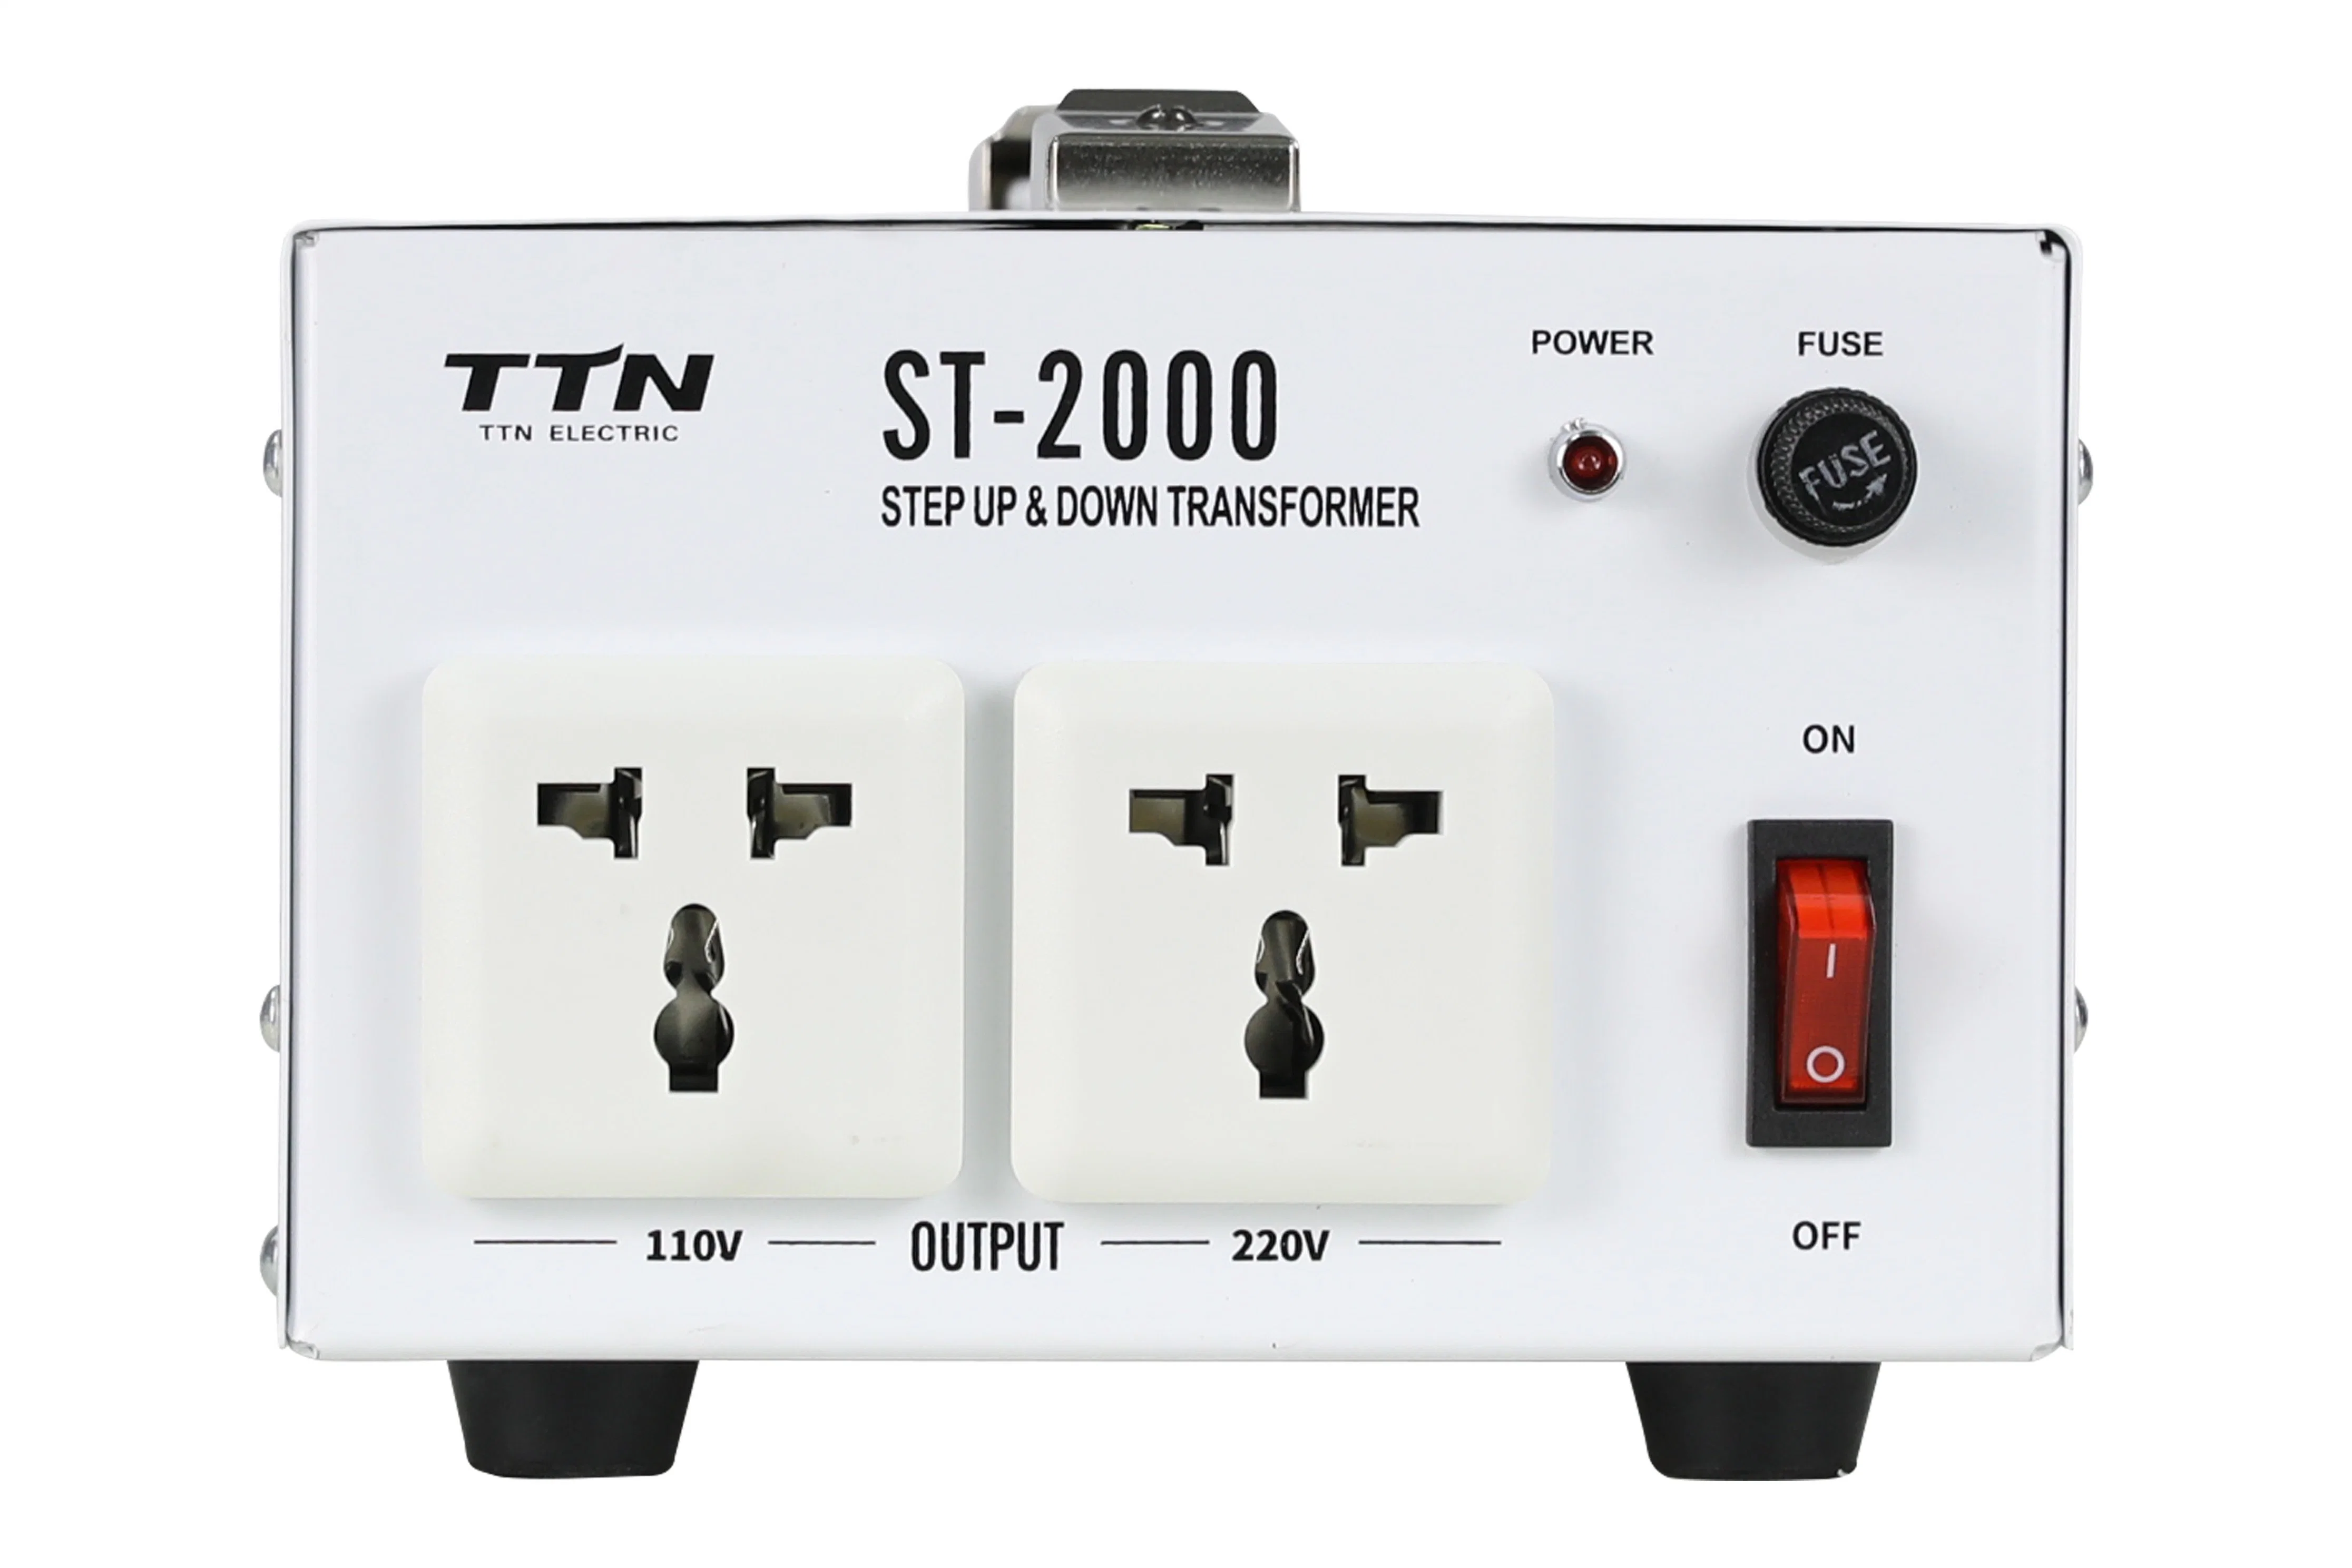 Ttn St-2000va Voltage Converter Step up and Down Transformer 110V 220V